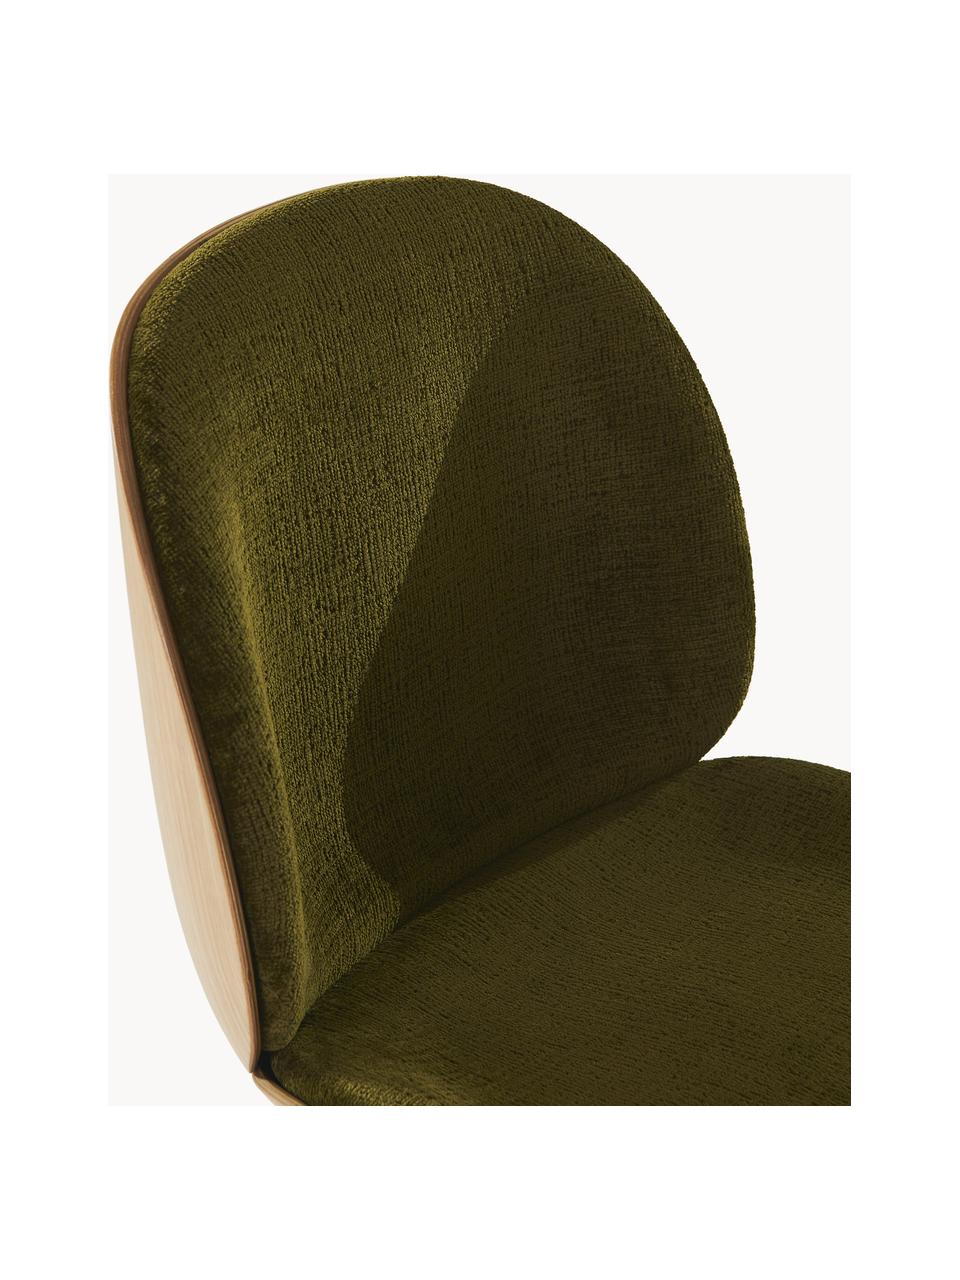 Fluwelen stoel Beetle met zitvlak, Bekleding: fluweel (100% polyester), Zitvlak: gelakt eikenhout, Poten: gecoat staal, Fluweel olijfgroen, eikenhout, glanzend zwart, B 56 x D 58 cm